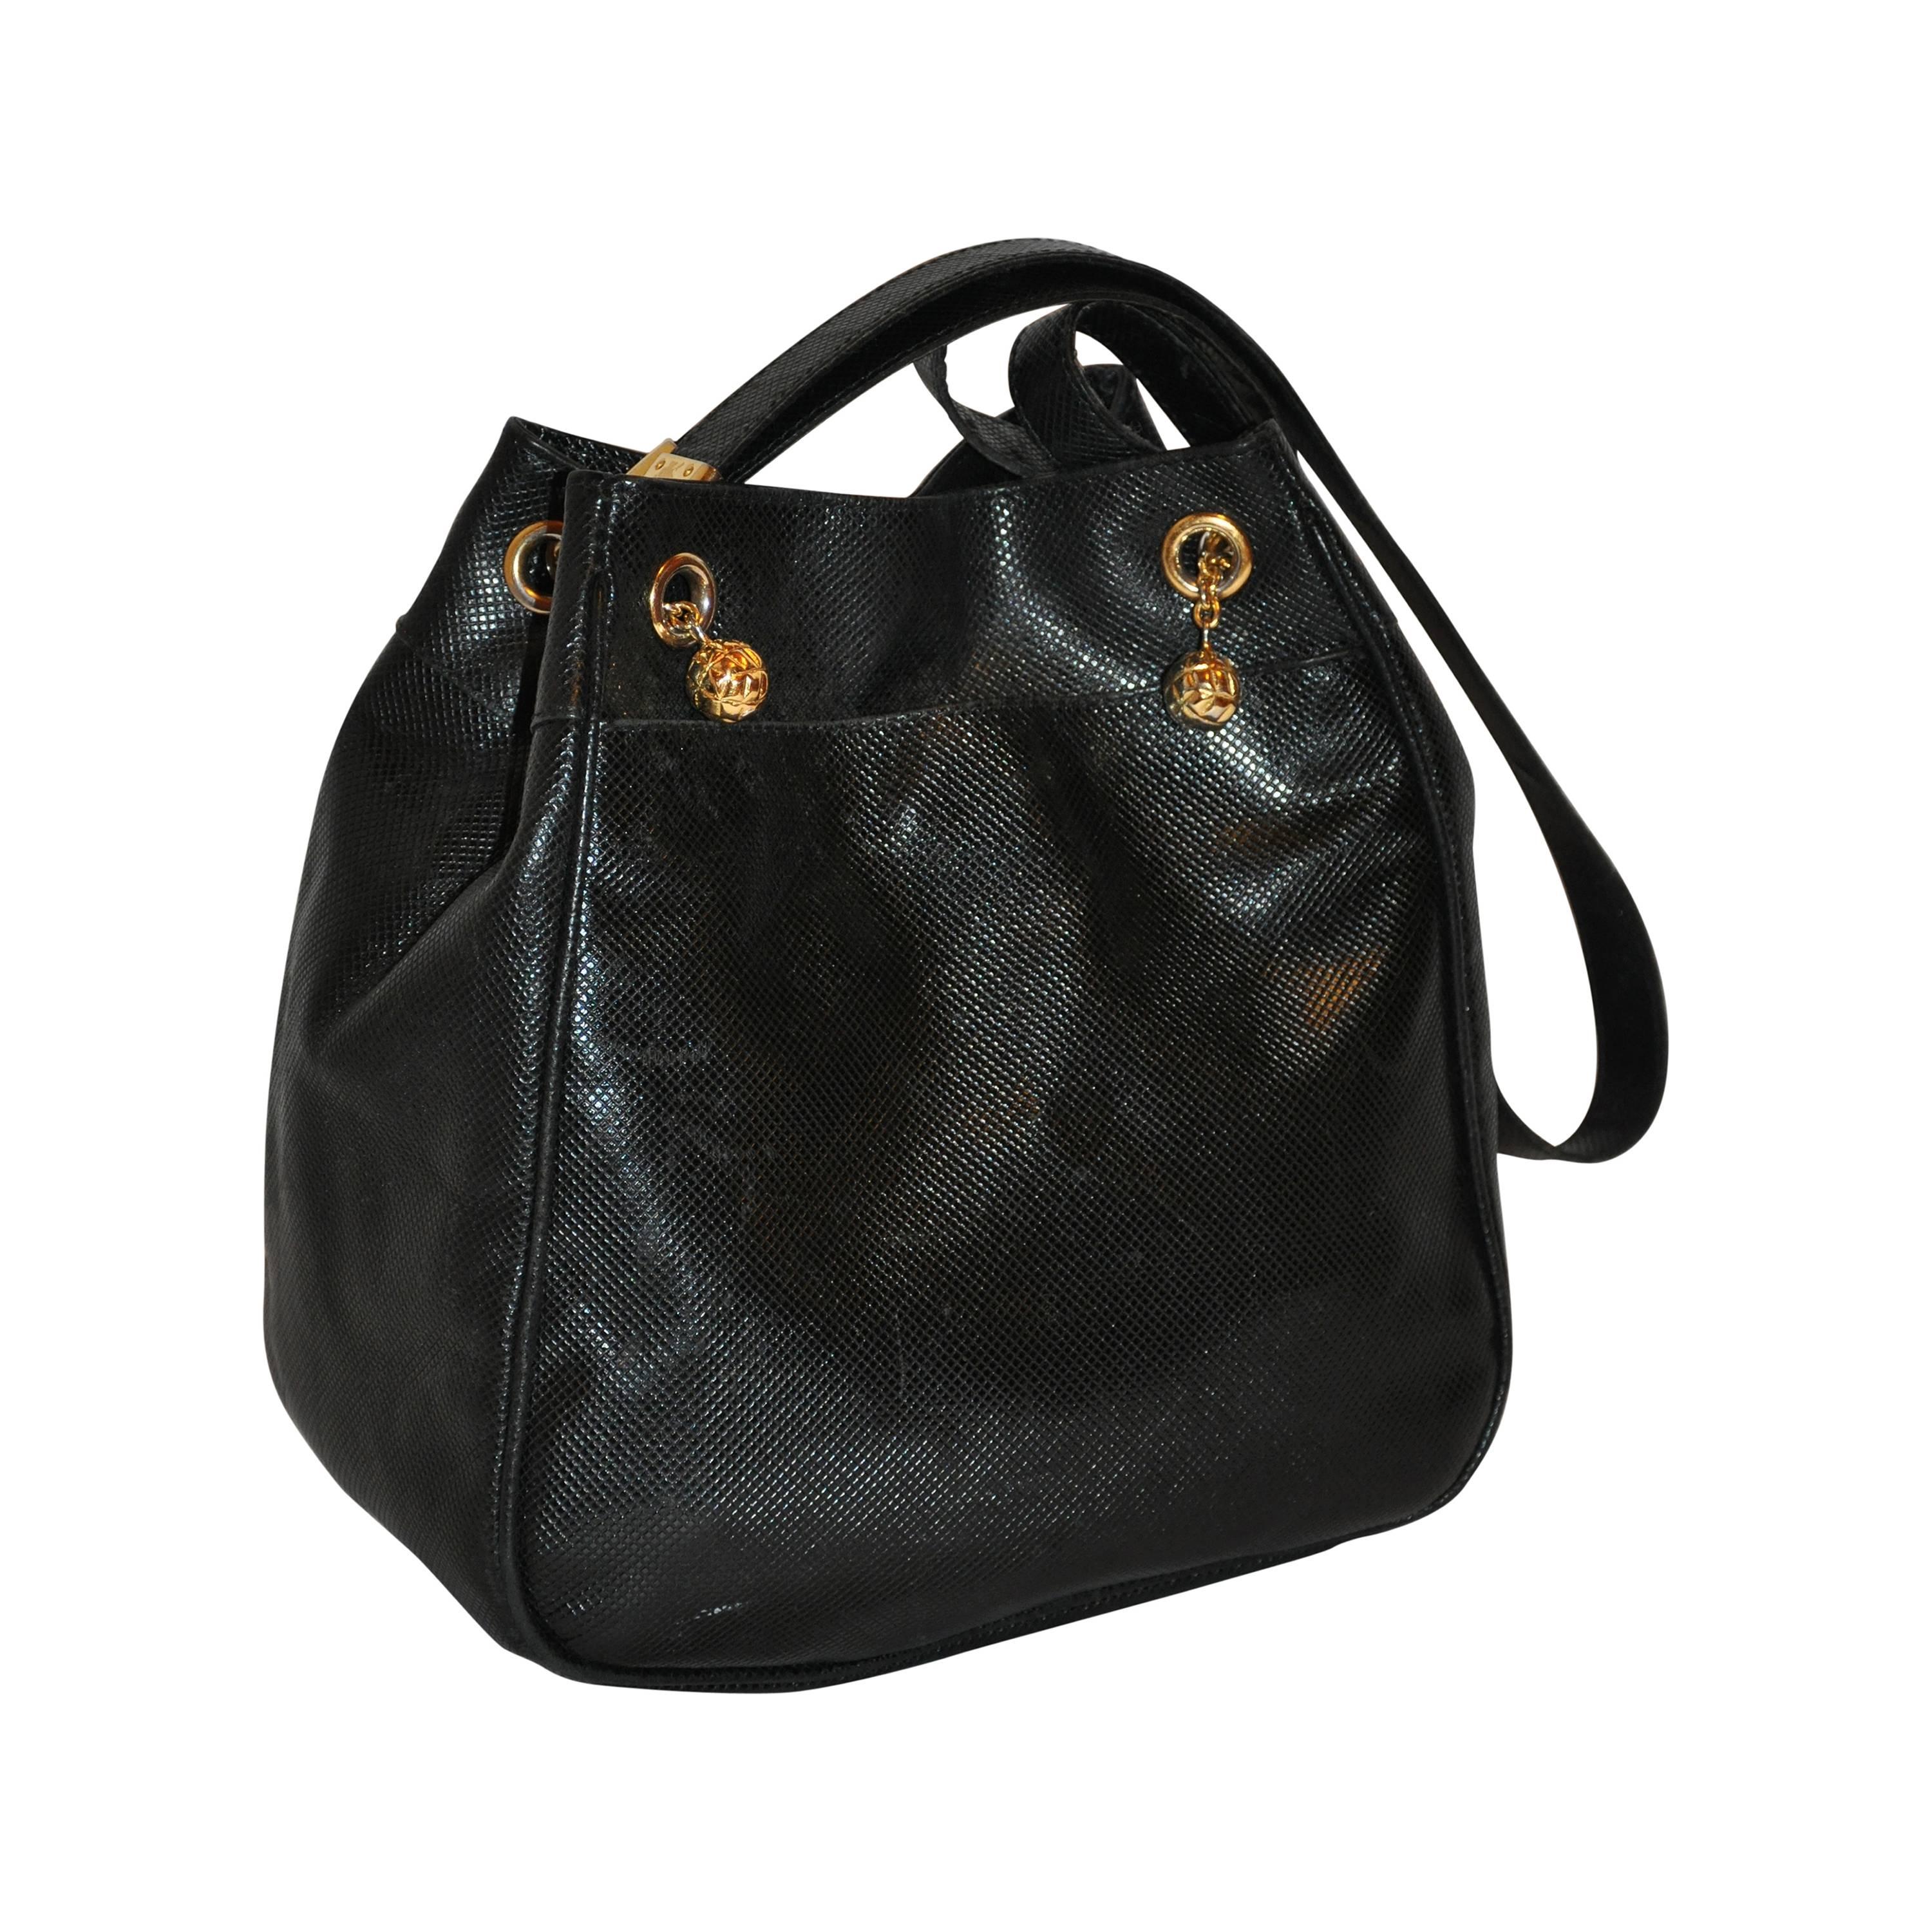 Bottega Veneta Textured Black Calfskin with Gold Hardware Shoulder Bag